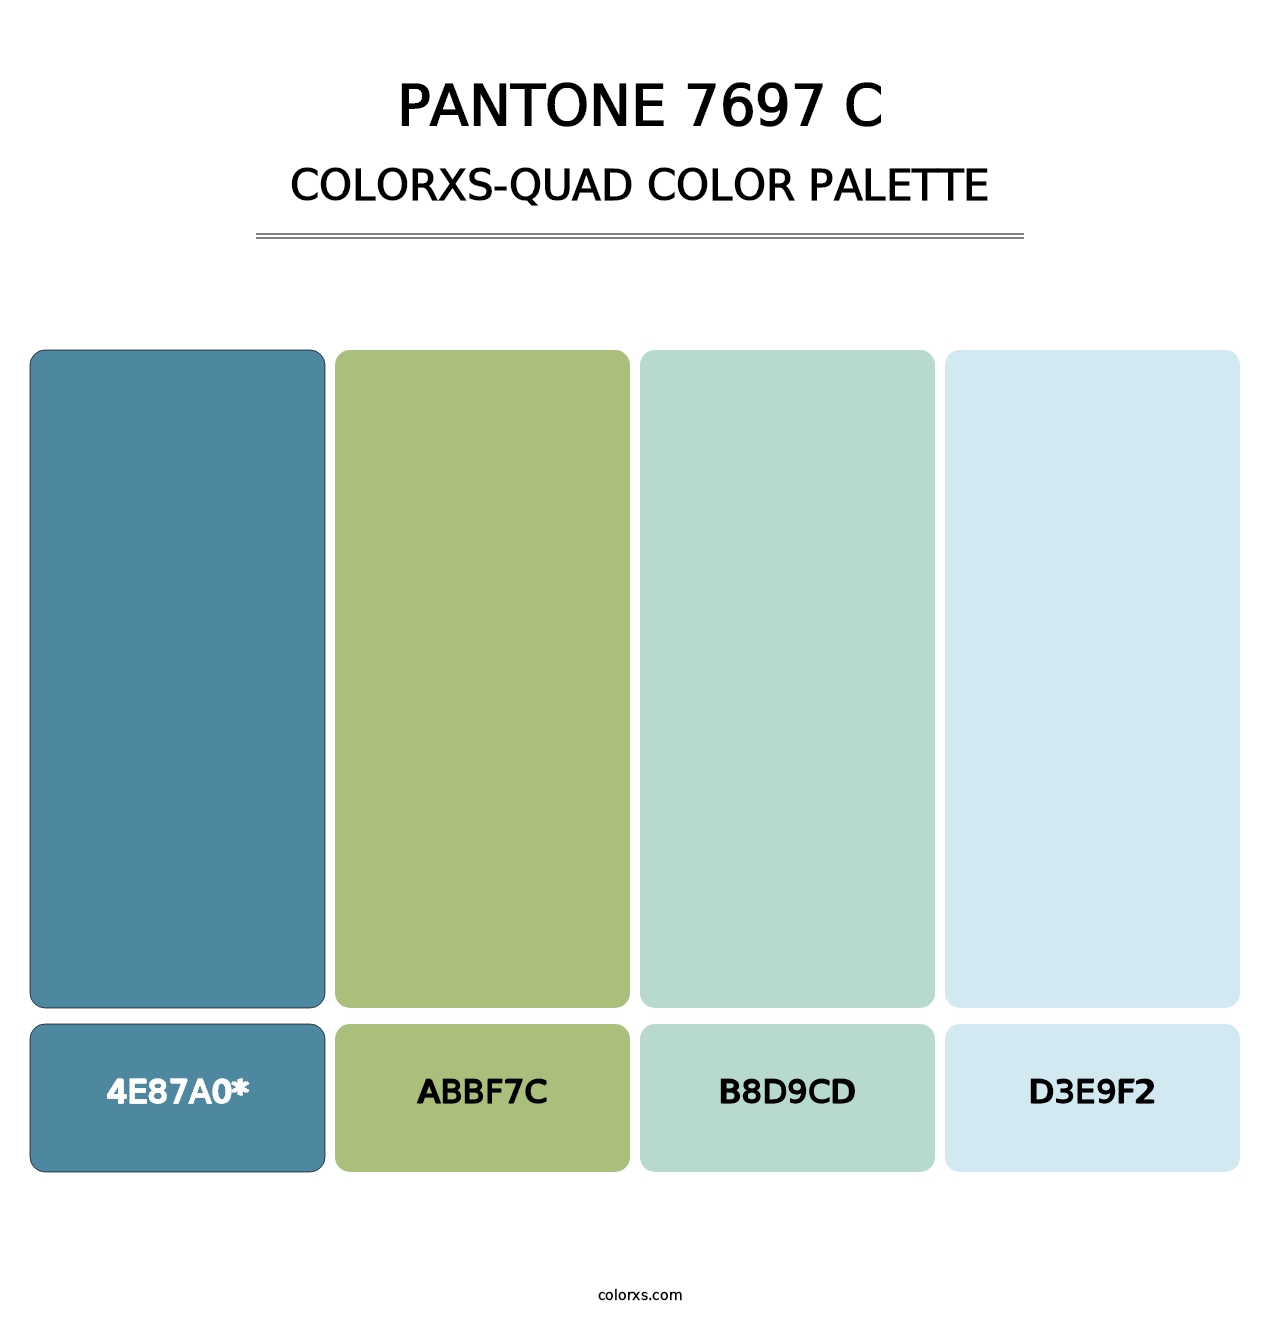 PANTONE 7697 C - Colorxs Quad Palette